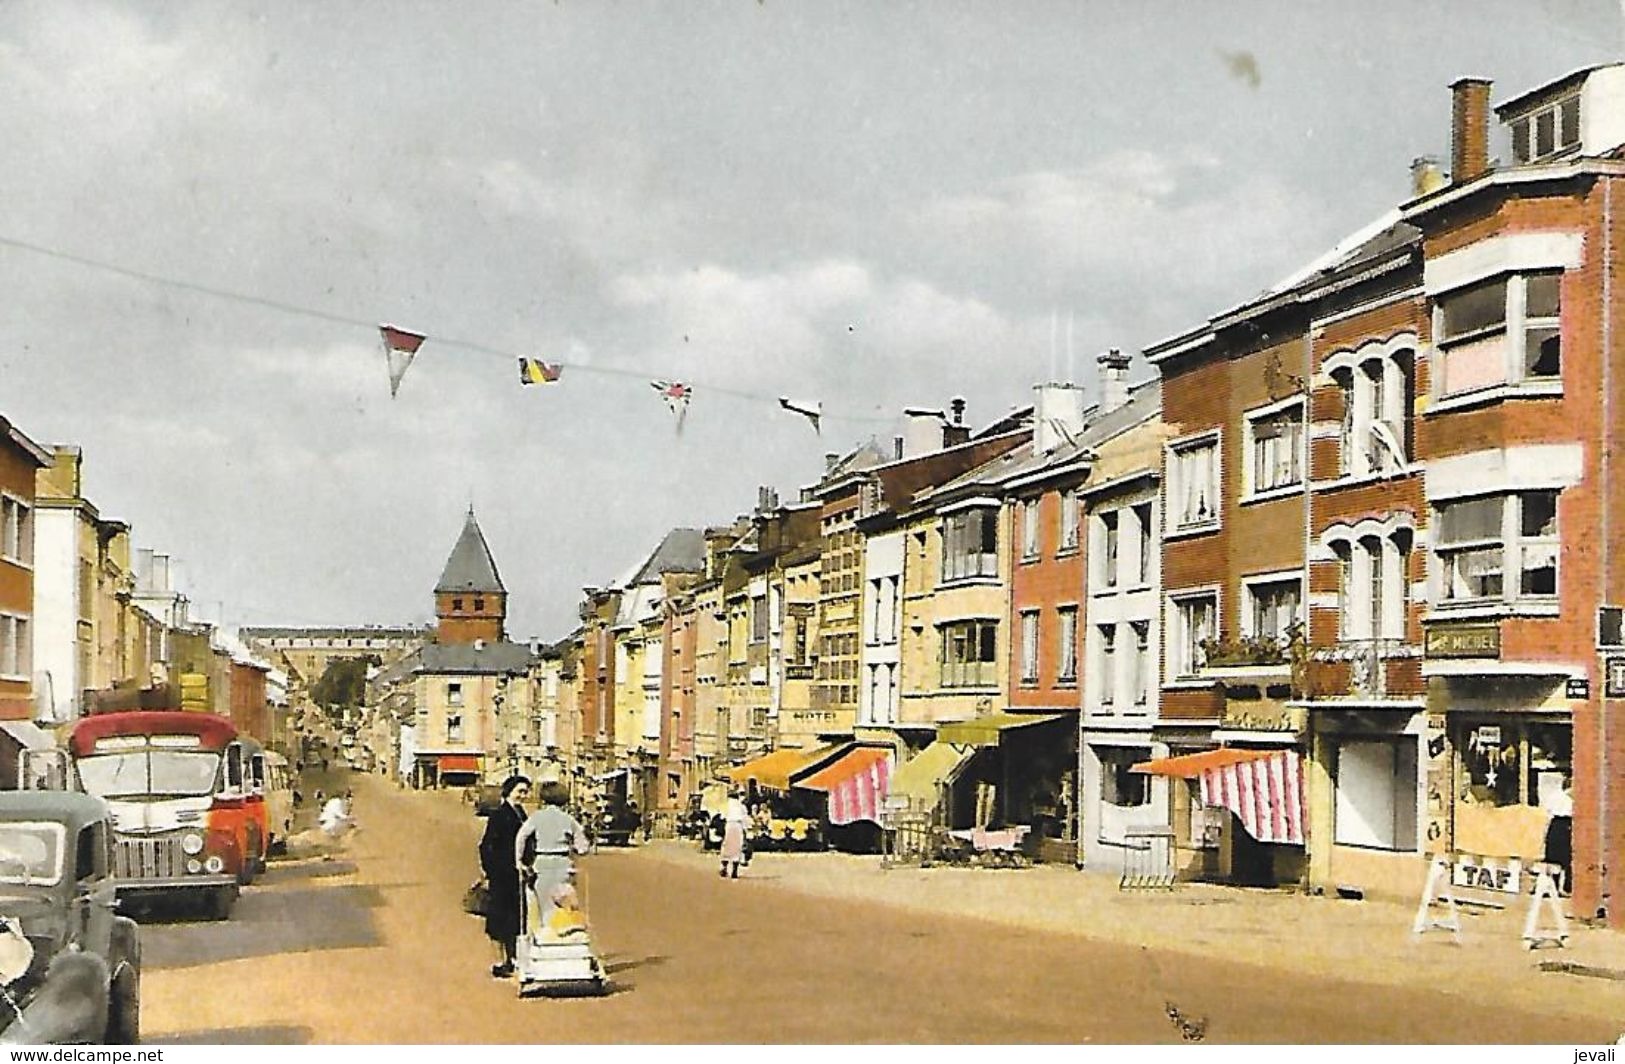 CPA / AK / PK   -  BASTOGNE  La Grand'rue - Bastogne